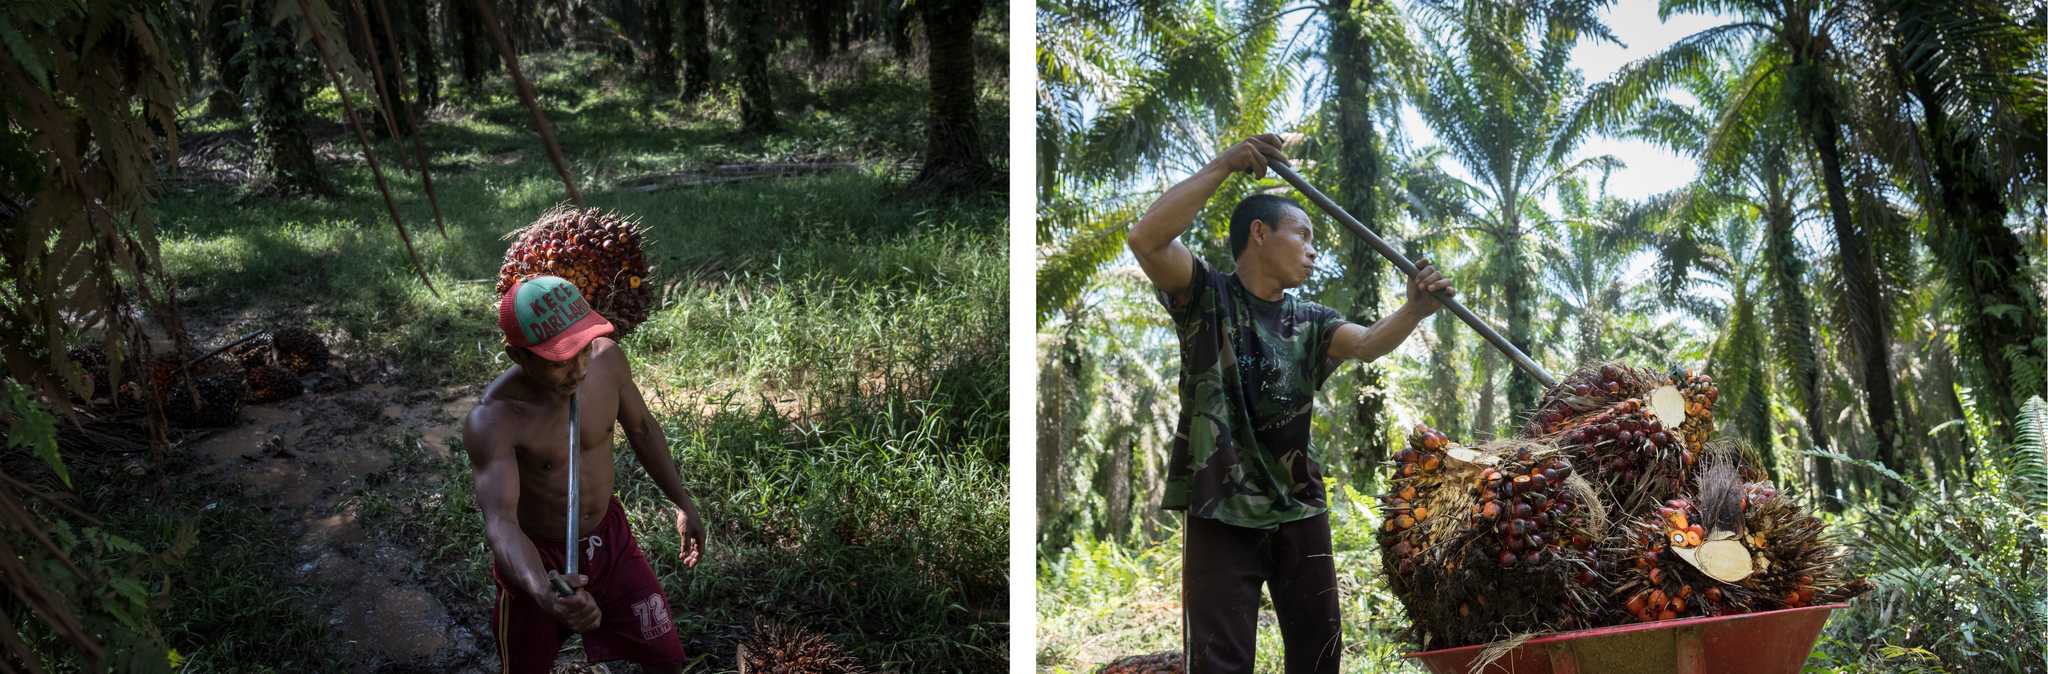 Suhandri (kiri) memanen sawit di sebuah kebun milik masyarakat di Desa Bina Karya, Sumatera Utara. Azari (kanan) bekerja sebagai buruh di perkebunan PT Lonsum di Tebing Tinggi. Oleh Nopri Ismi.